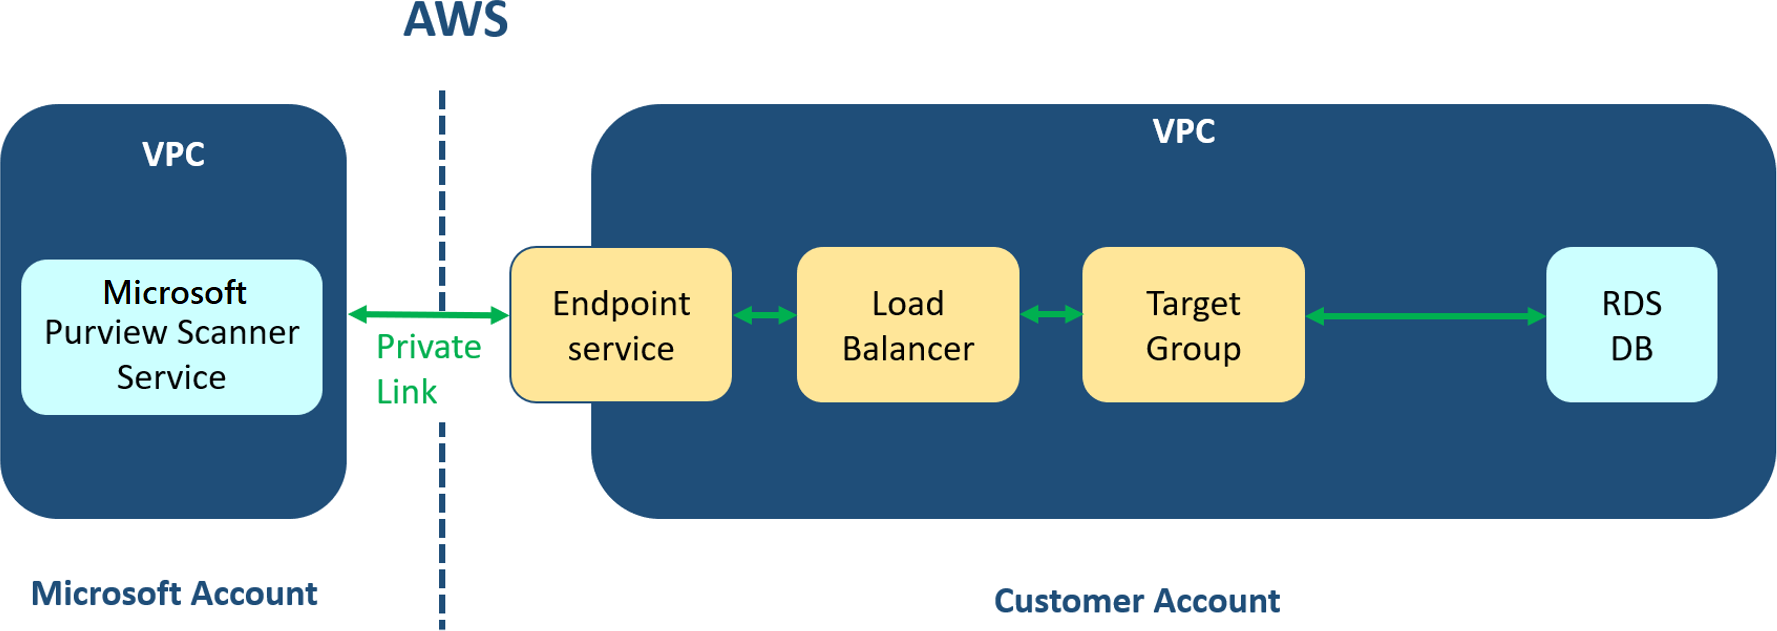 Diagrama del servicio Multicloud Scanning Connectors for Microsoft Purview en una arquitectura de VPC.